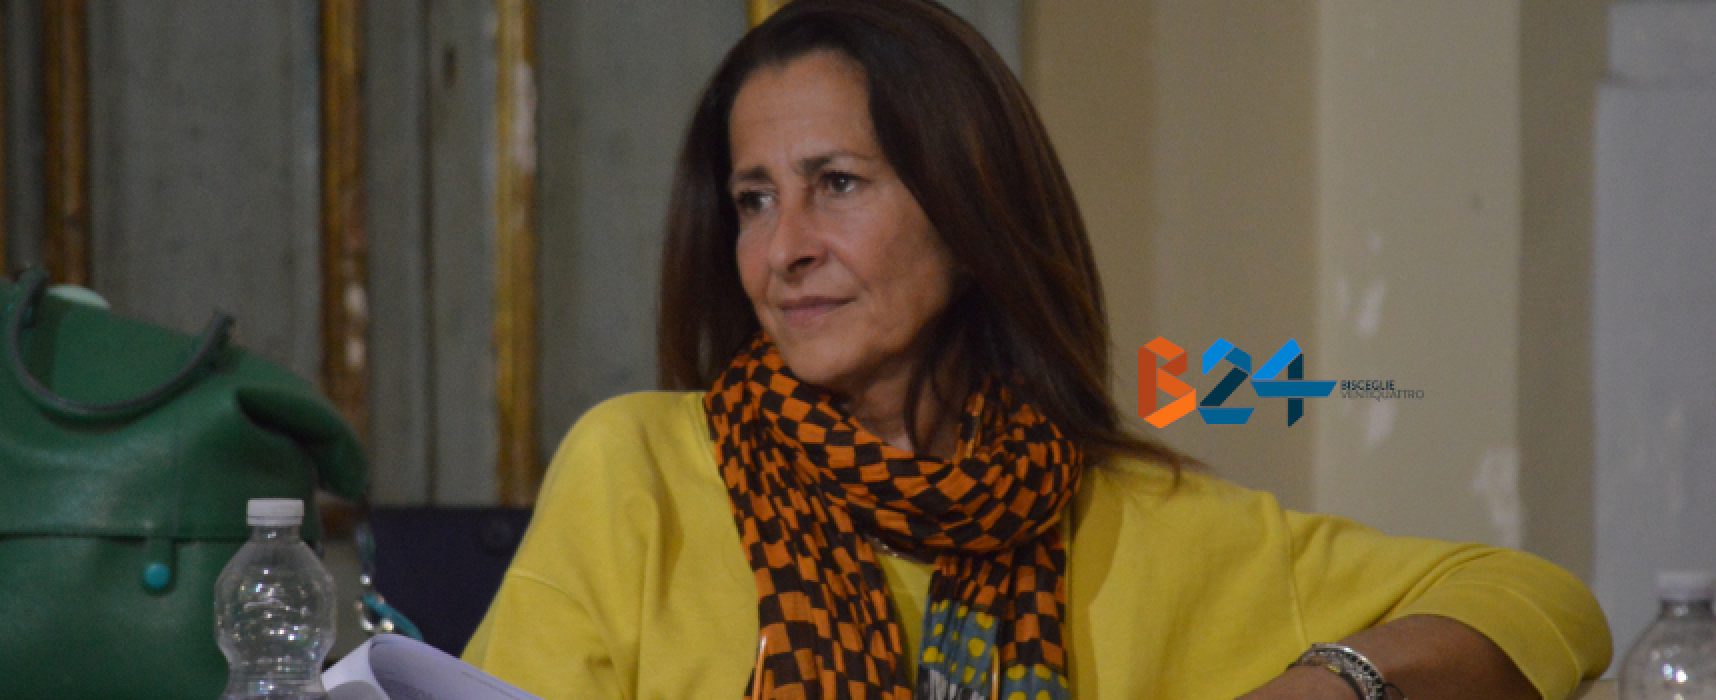 Vittoria Sasso si dimette da assessore: “Delusione verso progetto civico mai realizzato”